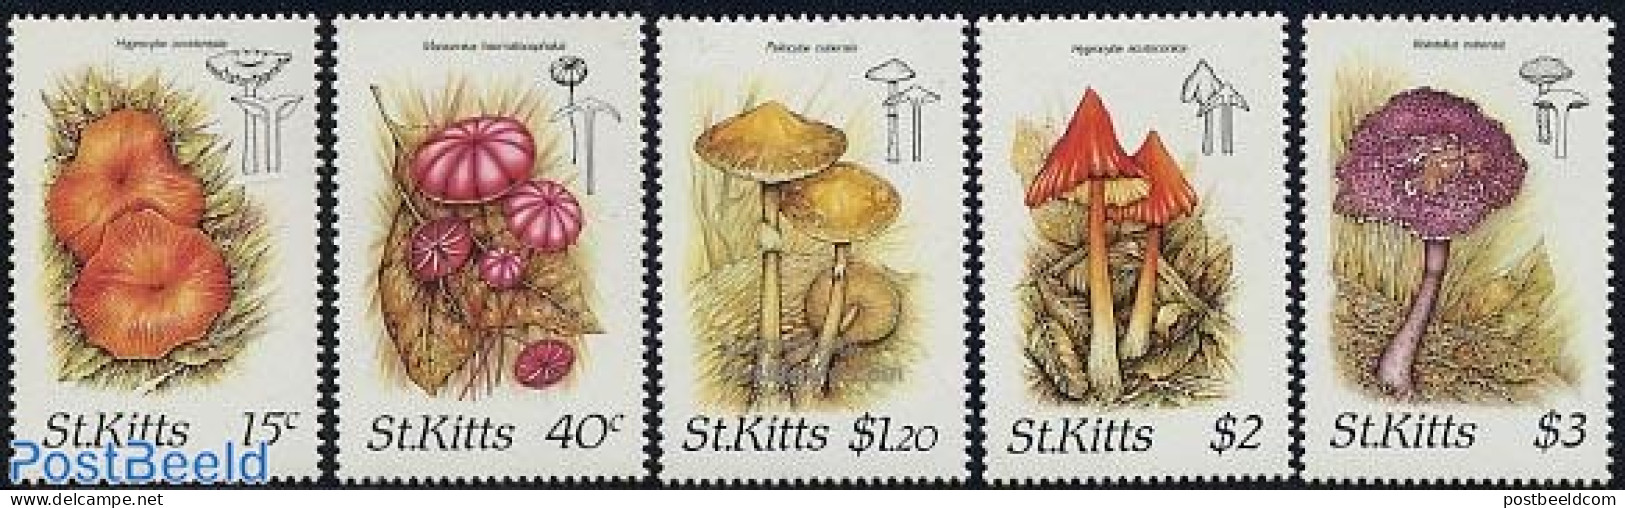 Saint Kitts/Nevis 1987 Mushrooms 5v, Mint NH, Nature - Mushrooms - Champignons